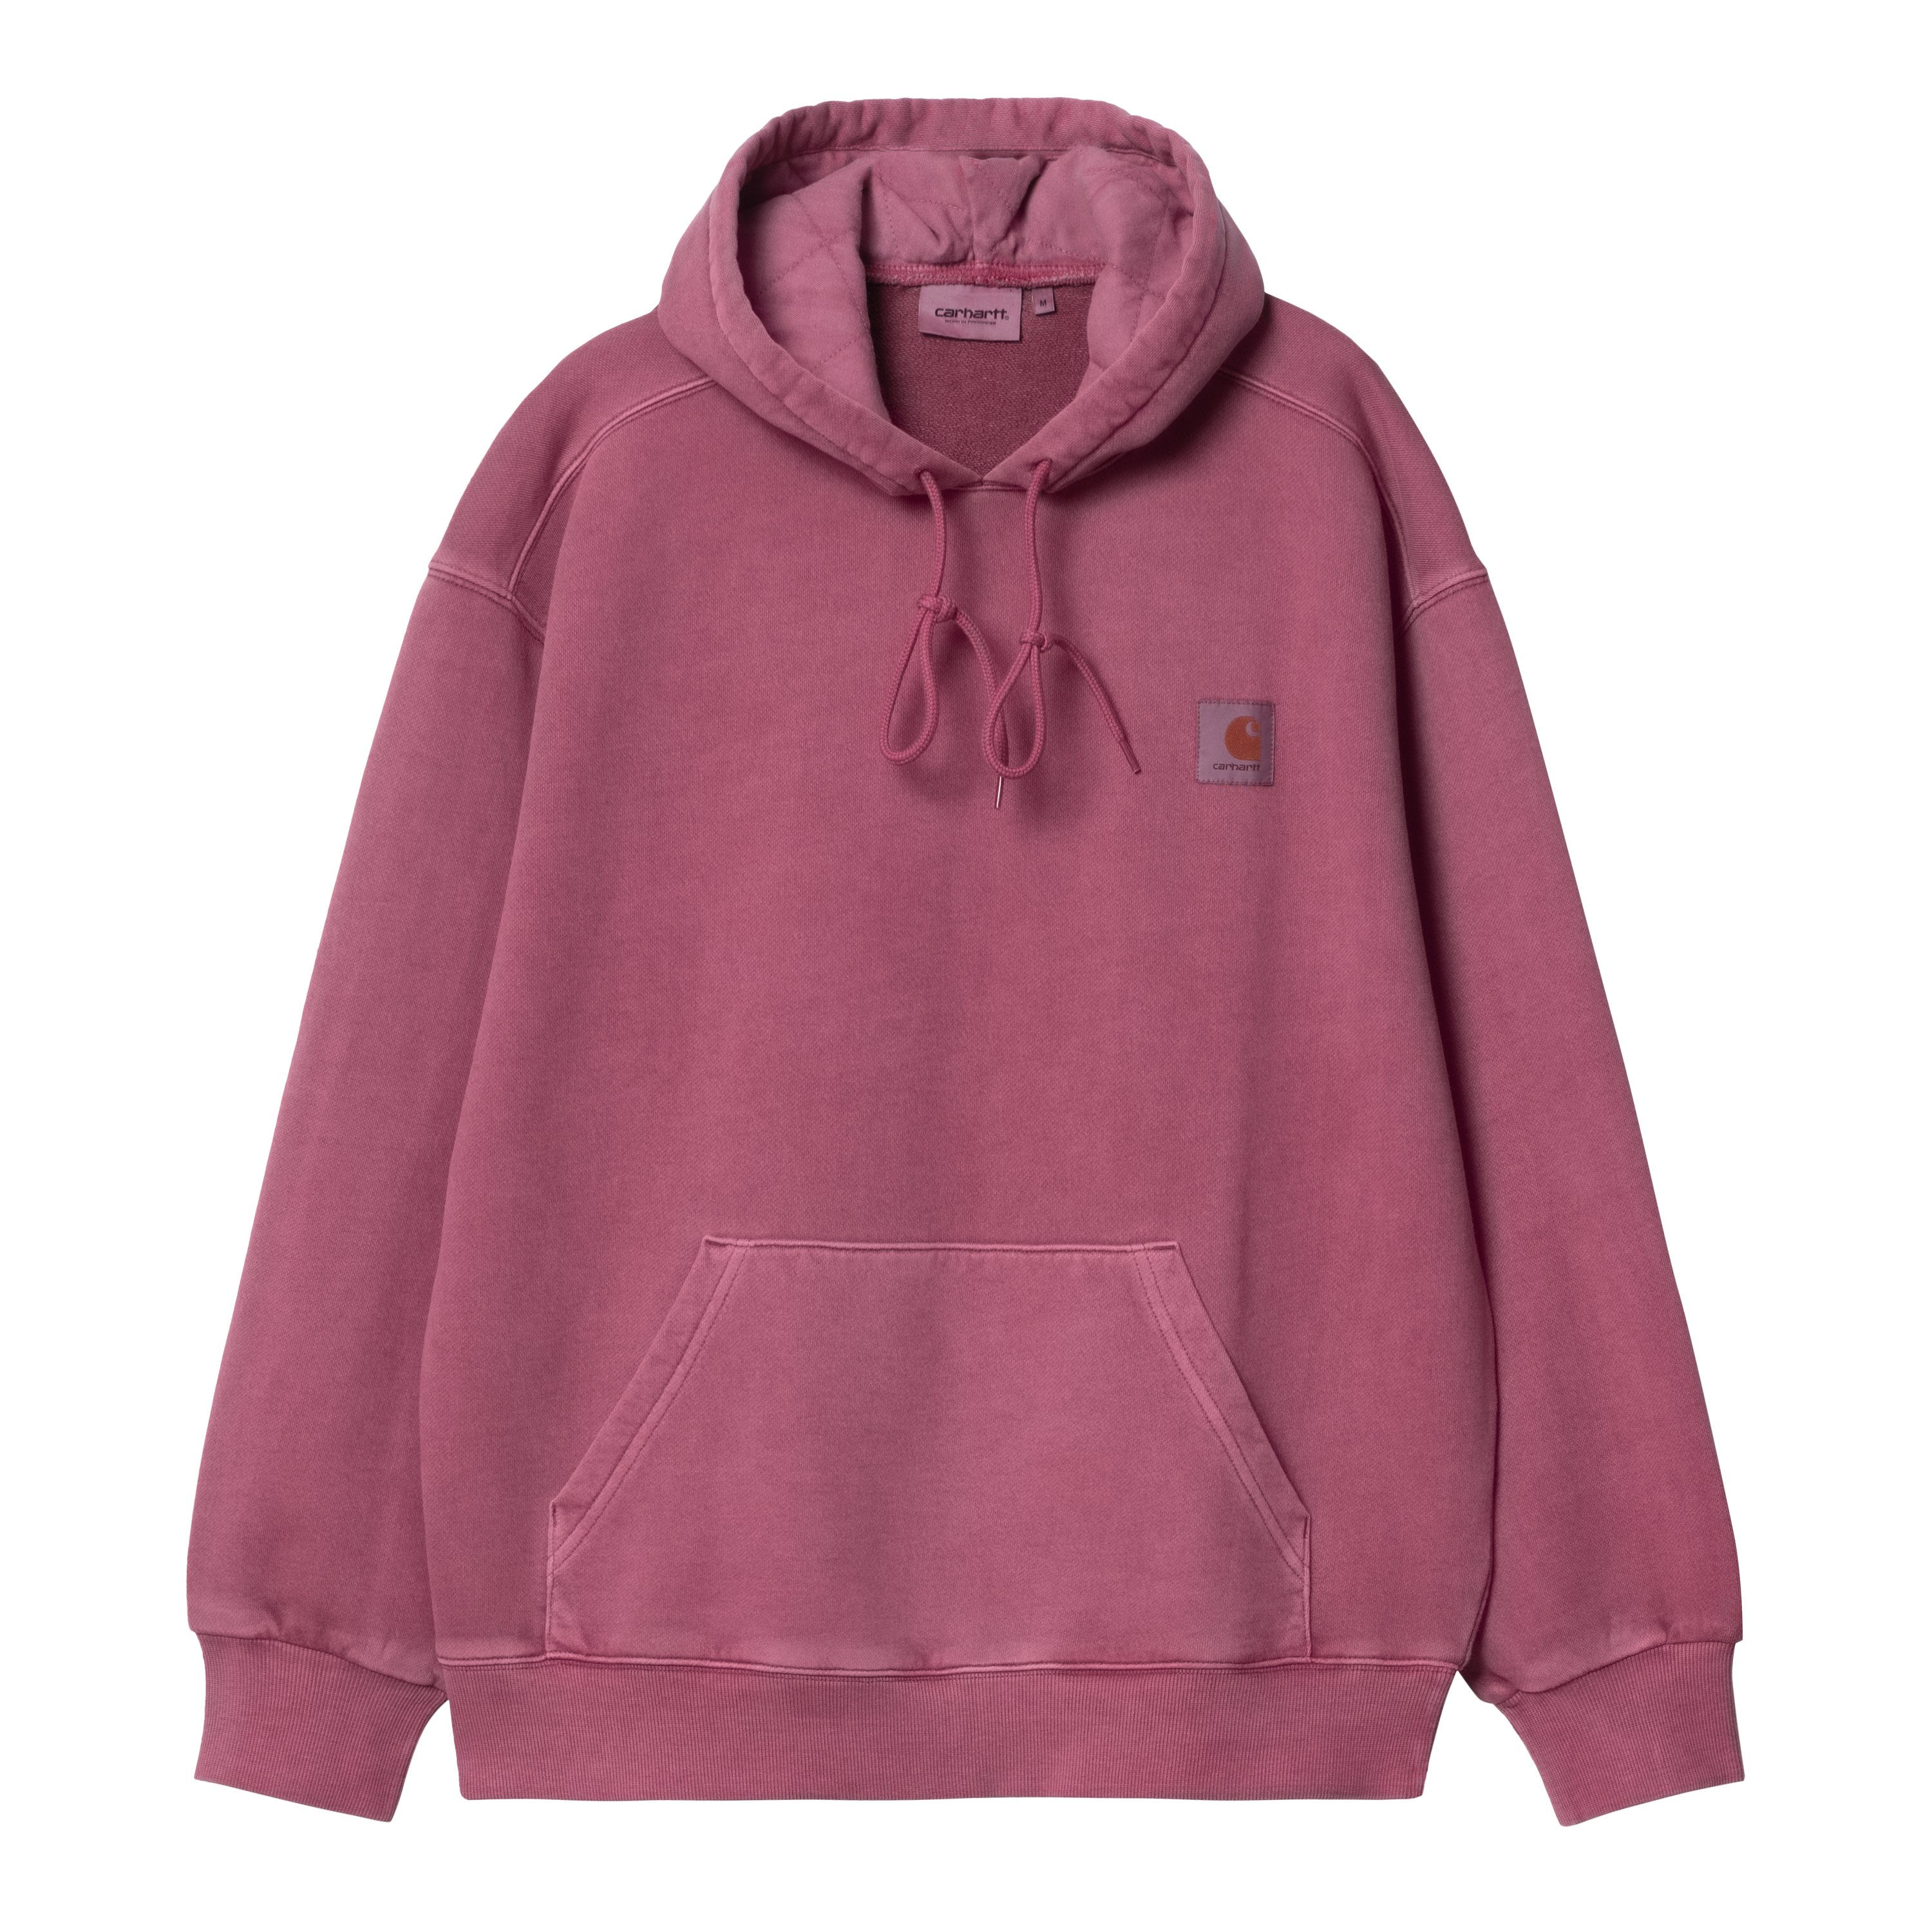 Carhartt WIP Hooded Nelson Sweatshirt in Pink